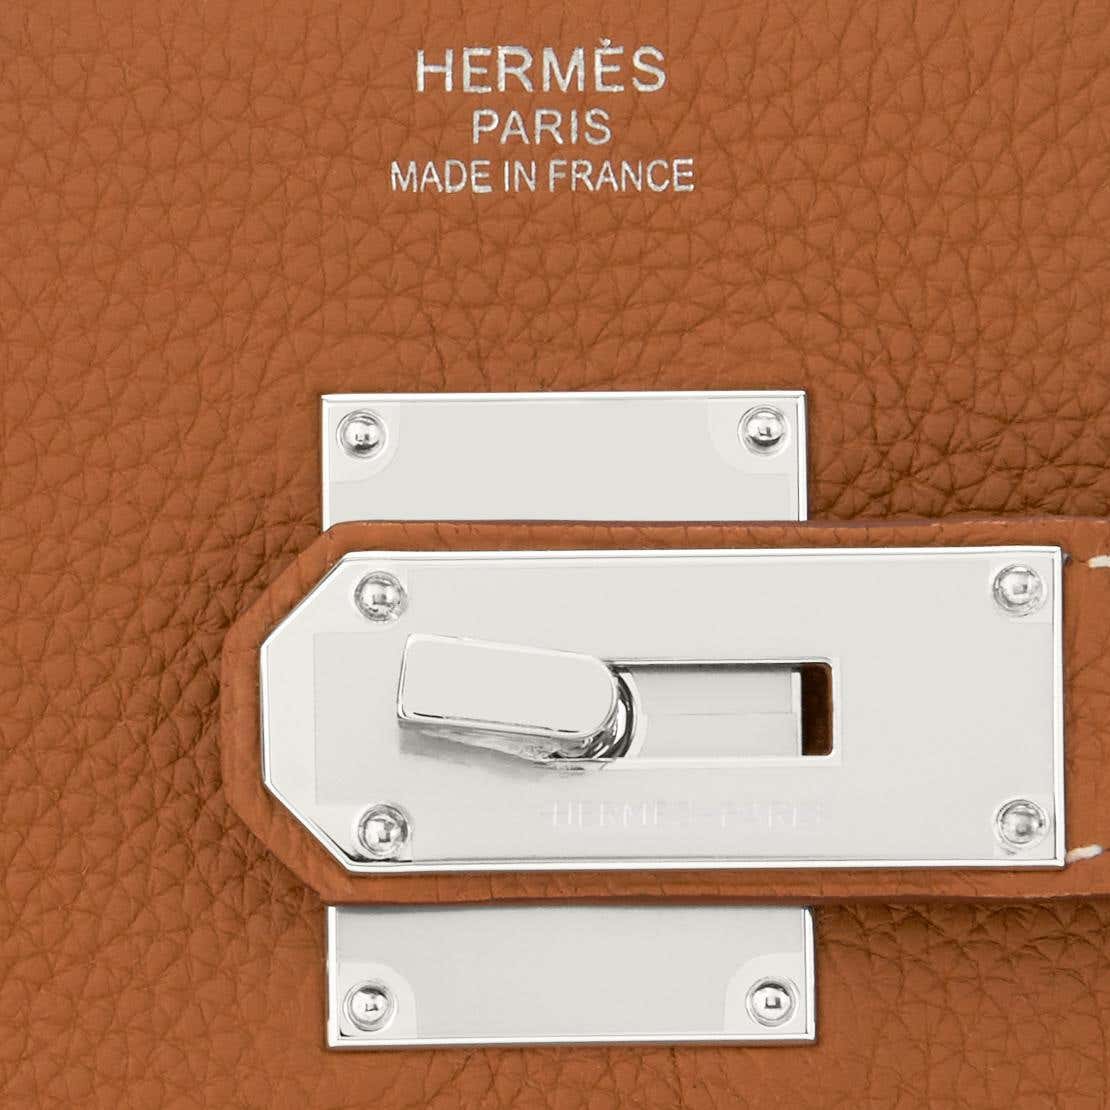 Hermes Birkin 40 Gold Togo Palladium Hardware